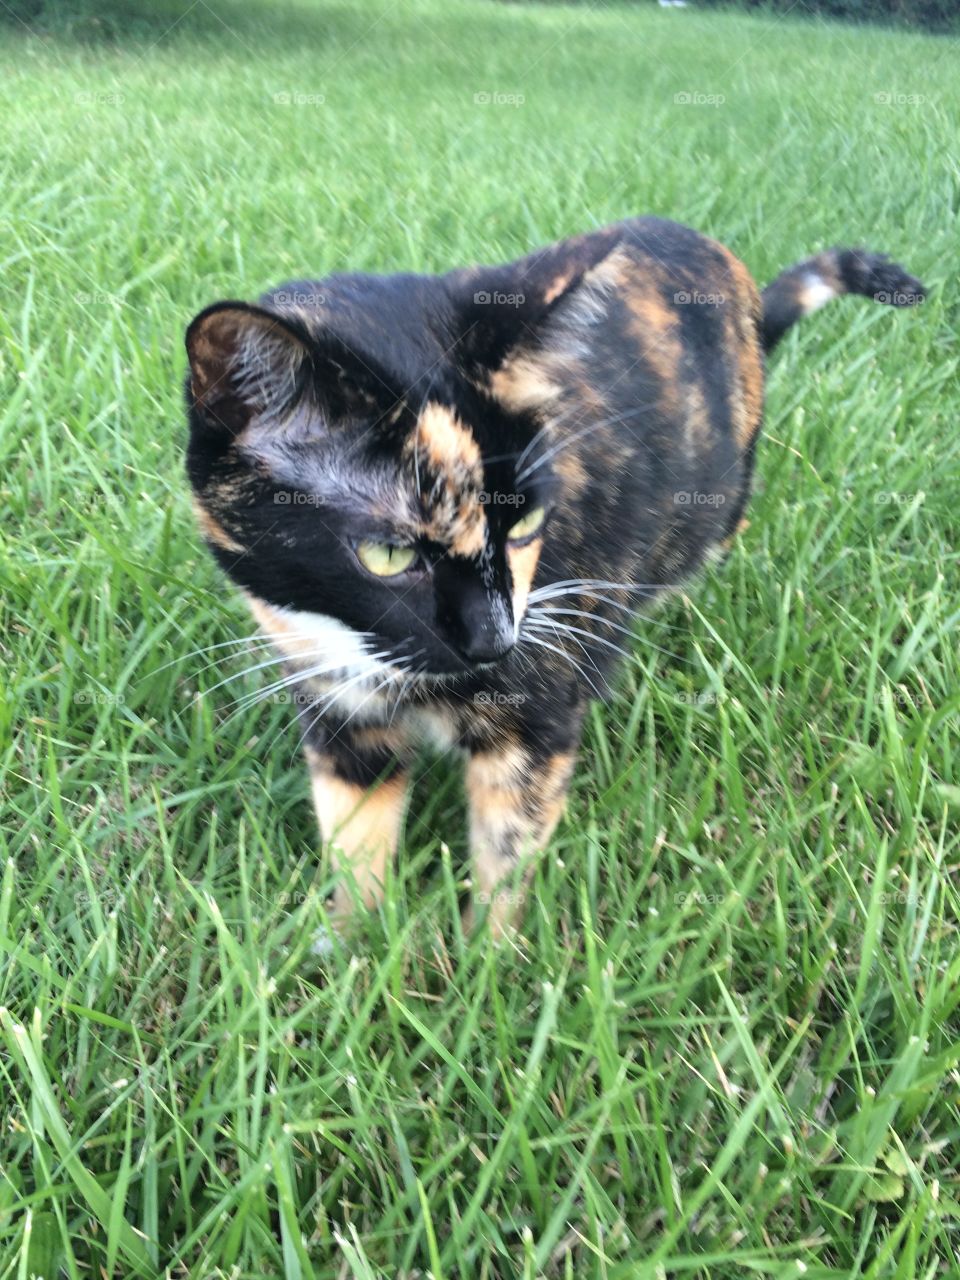 Outdoor cat